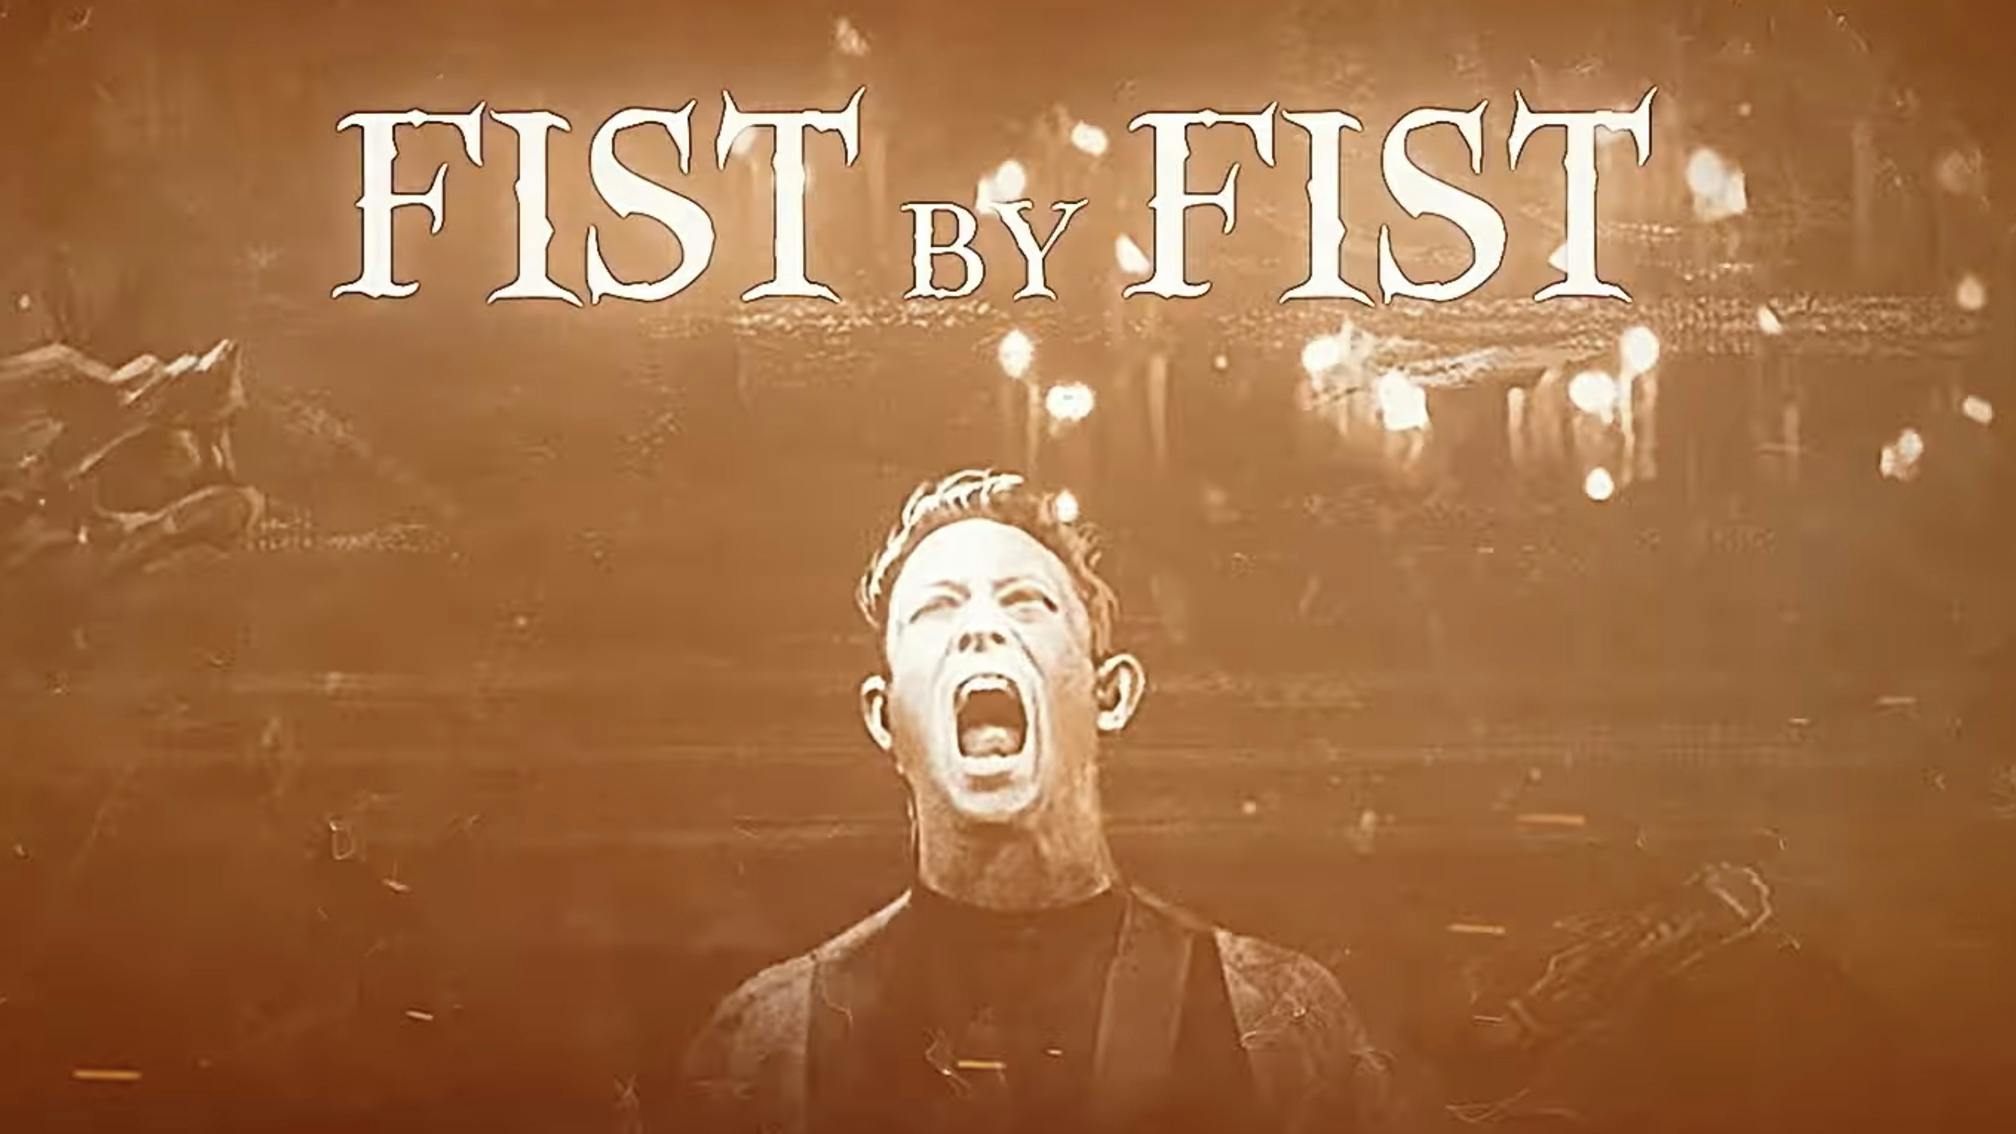 Powerwolf release Fist By Fist (Sacralize Or Strike) featuring Trivium's Matt Heafy